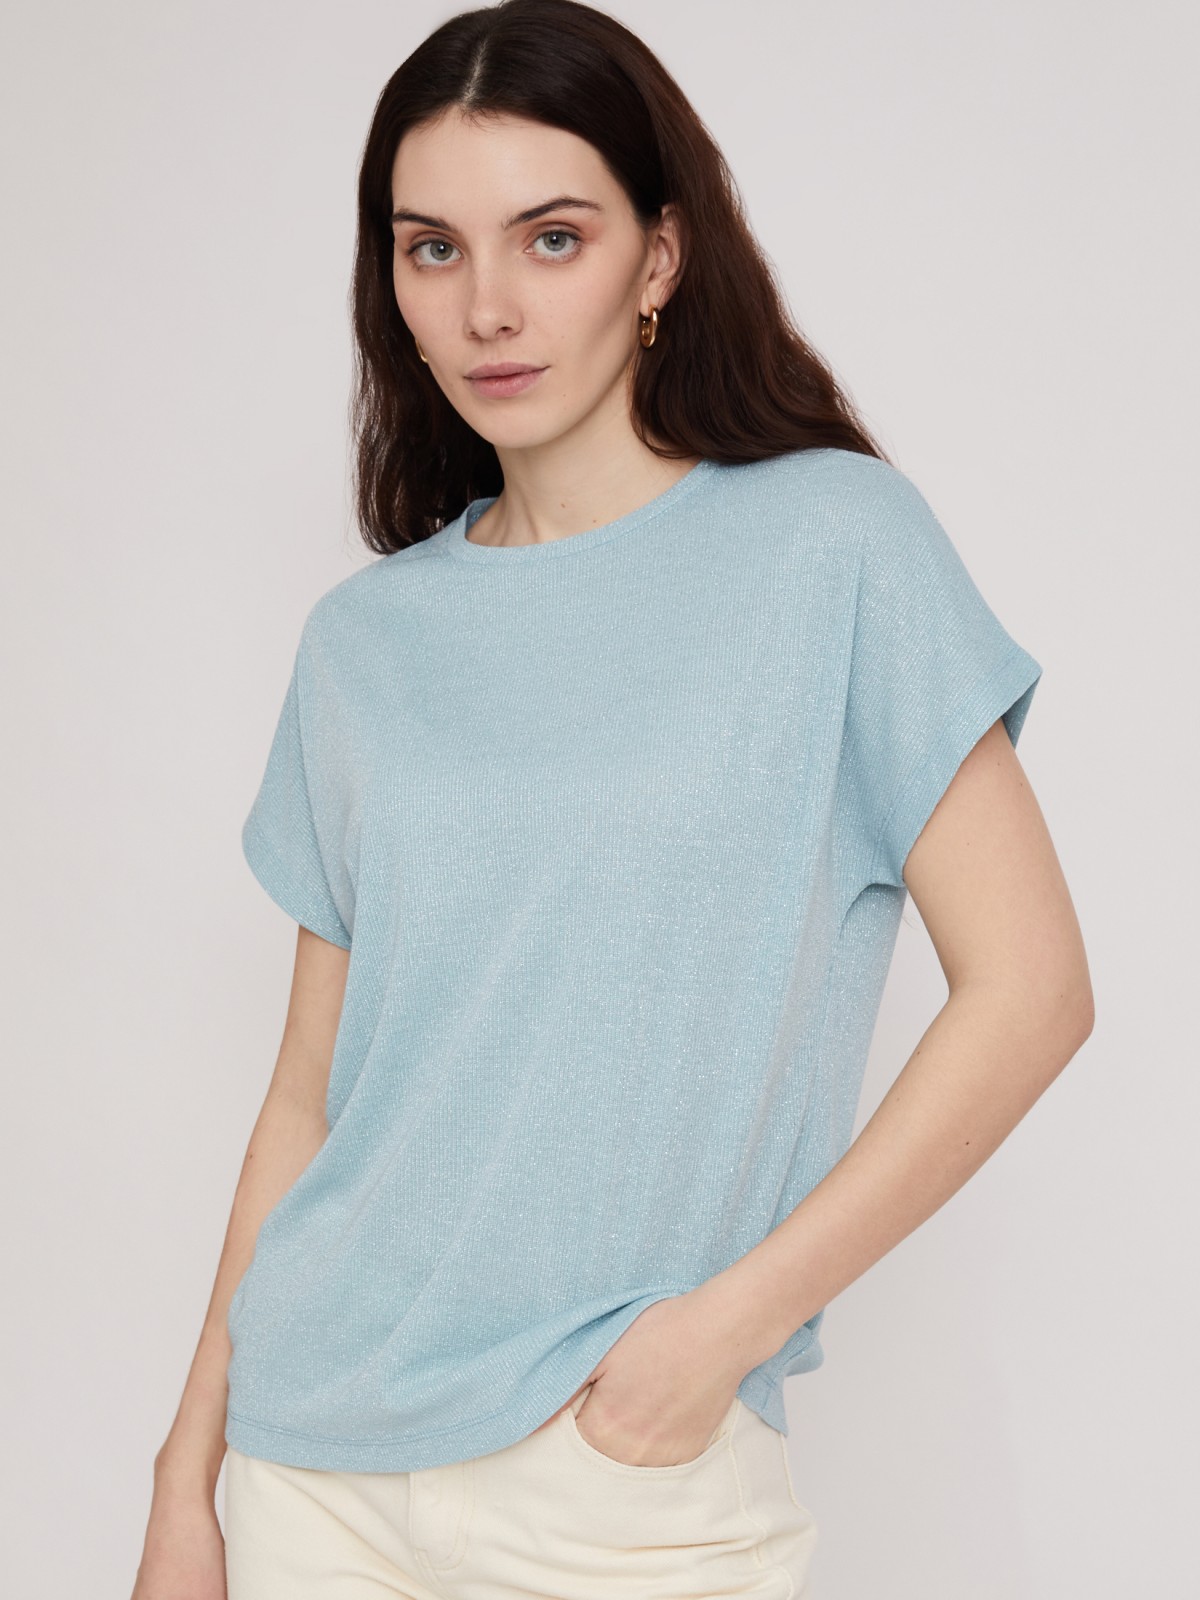 Топ-блузка с люрексом zolla 023233226023, цвет мятный, размер XS - фото 3